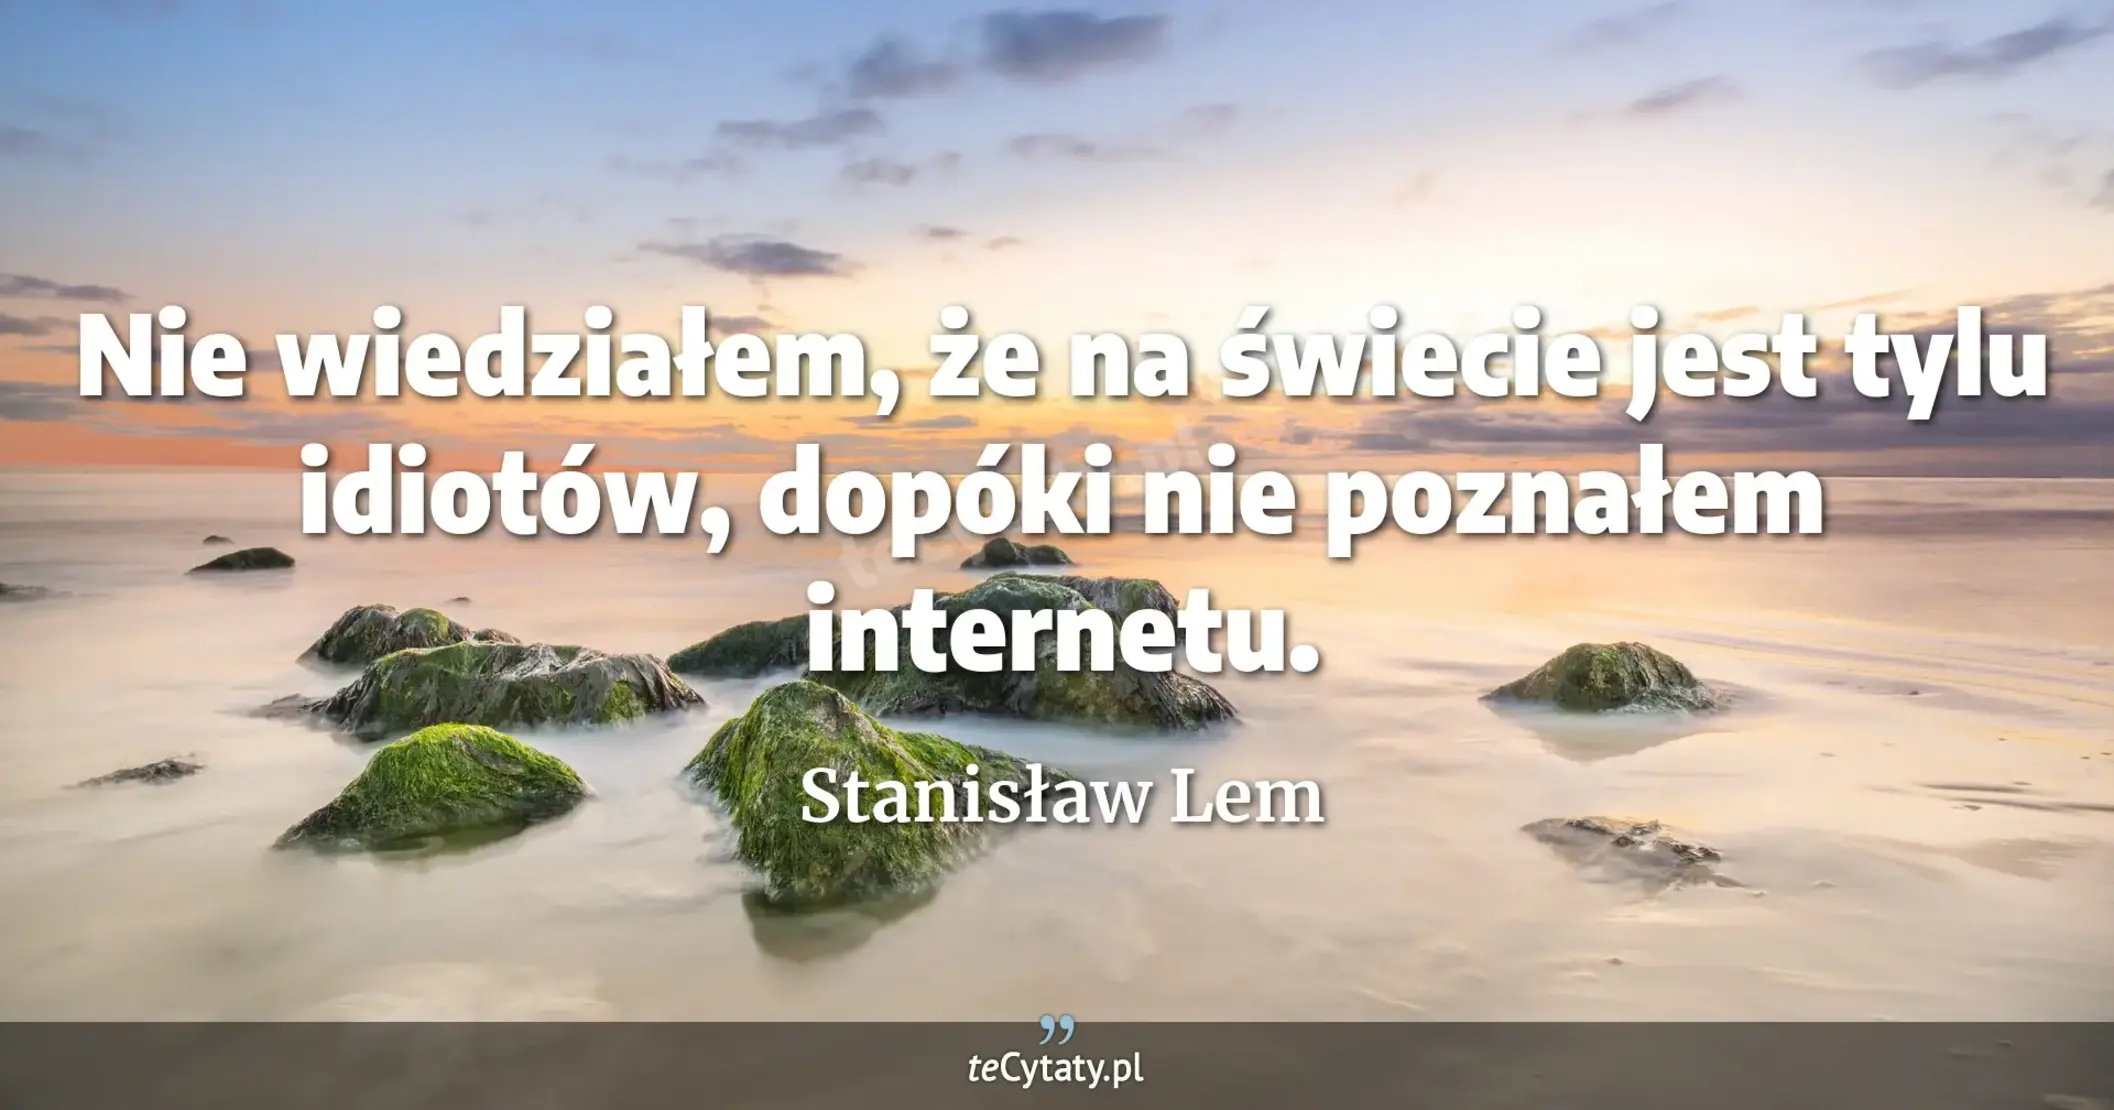 Nie wiedziałem, że na świecie jest tylu idiotów, dopóki nie poznałem internetu. - Stanisław Lem